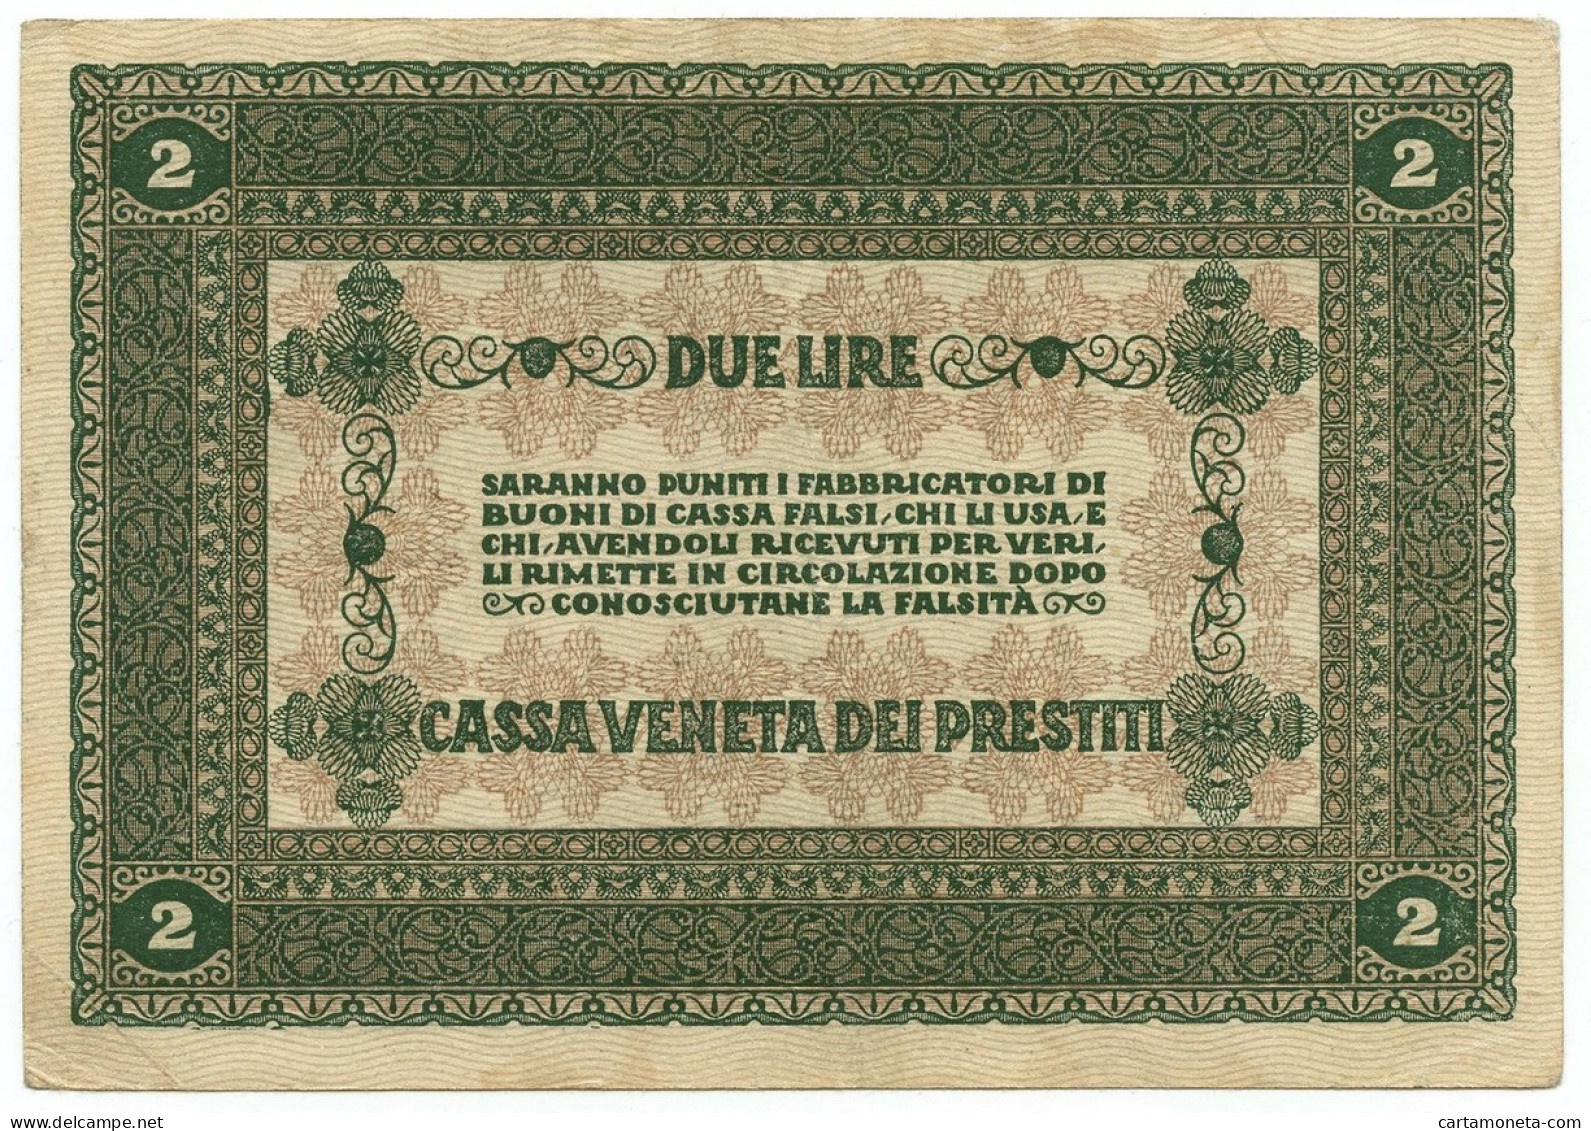 2 LIRE CASSA VENETA DEI PRESTITI OCCUPAZIONE AUSTRIACA 02/01/1918 BB+ - Occupation Autrichienne De Venezia